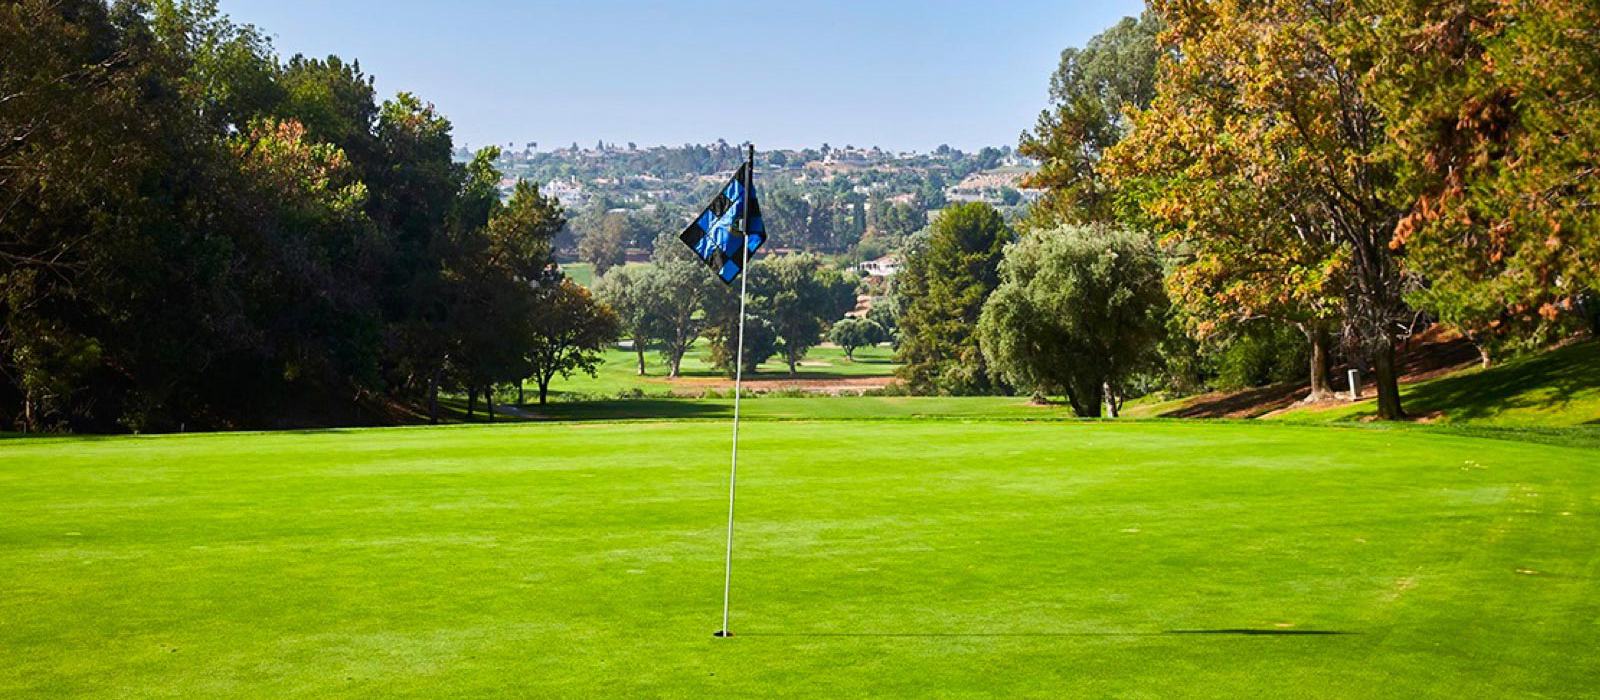 blue flag on golf course